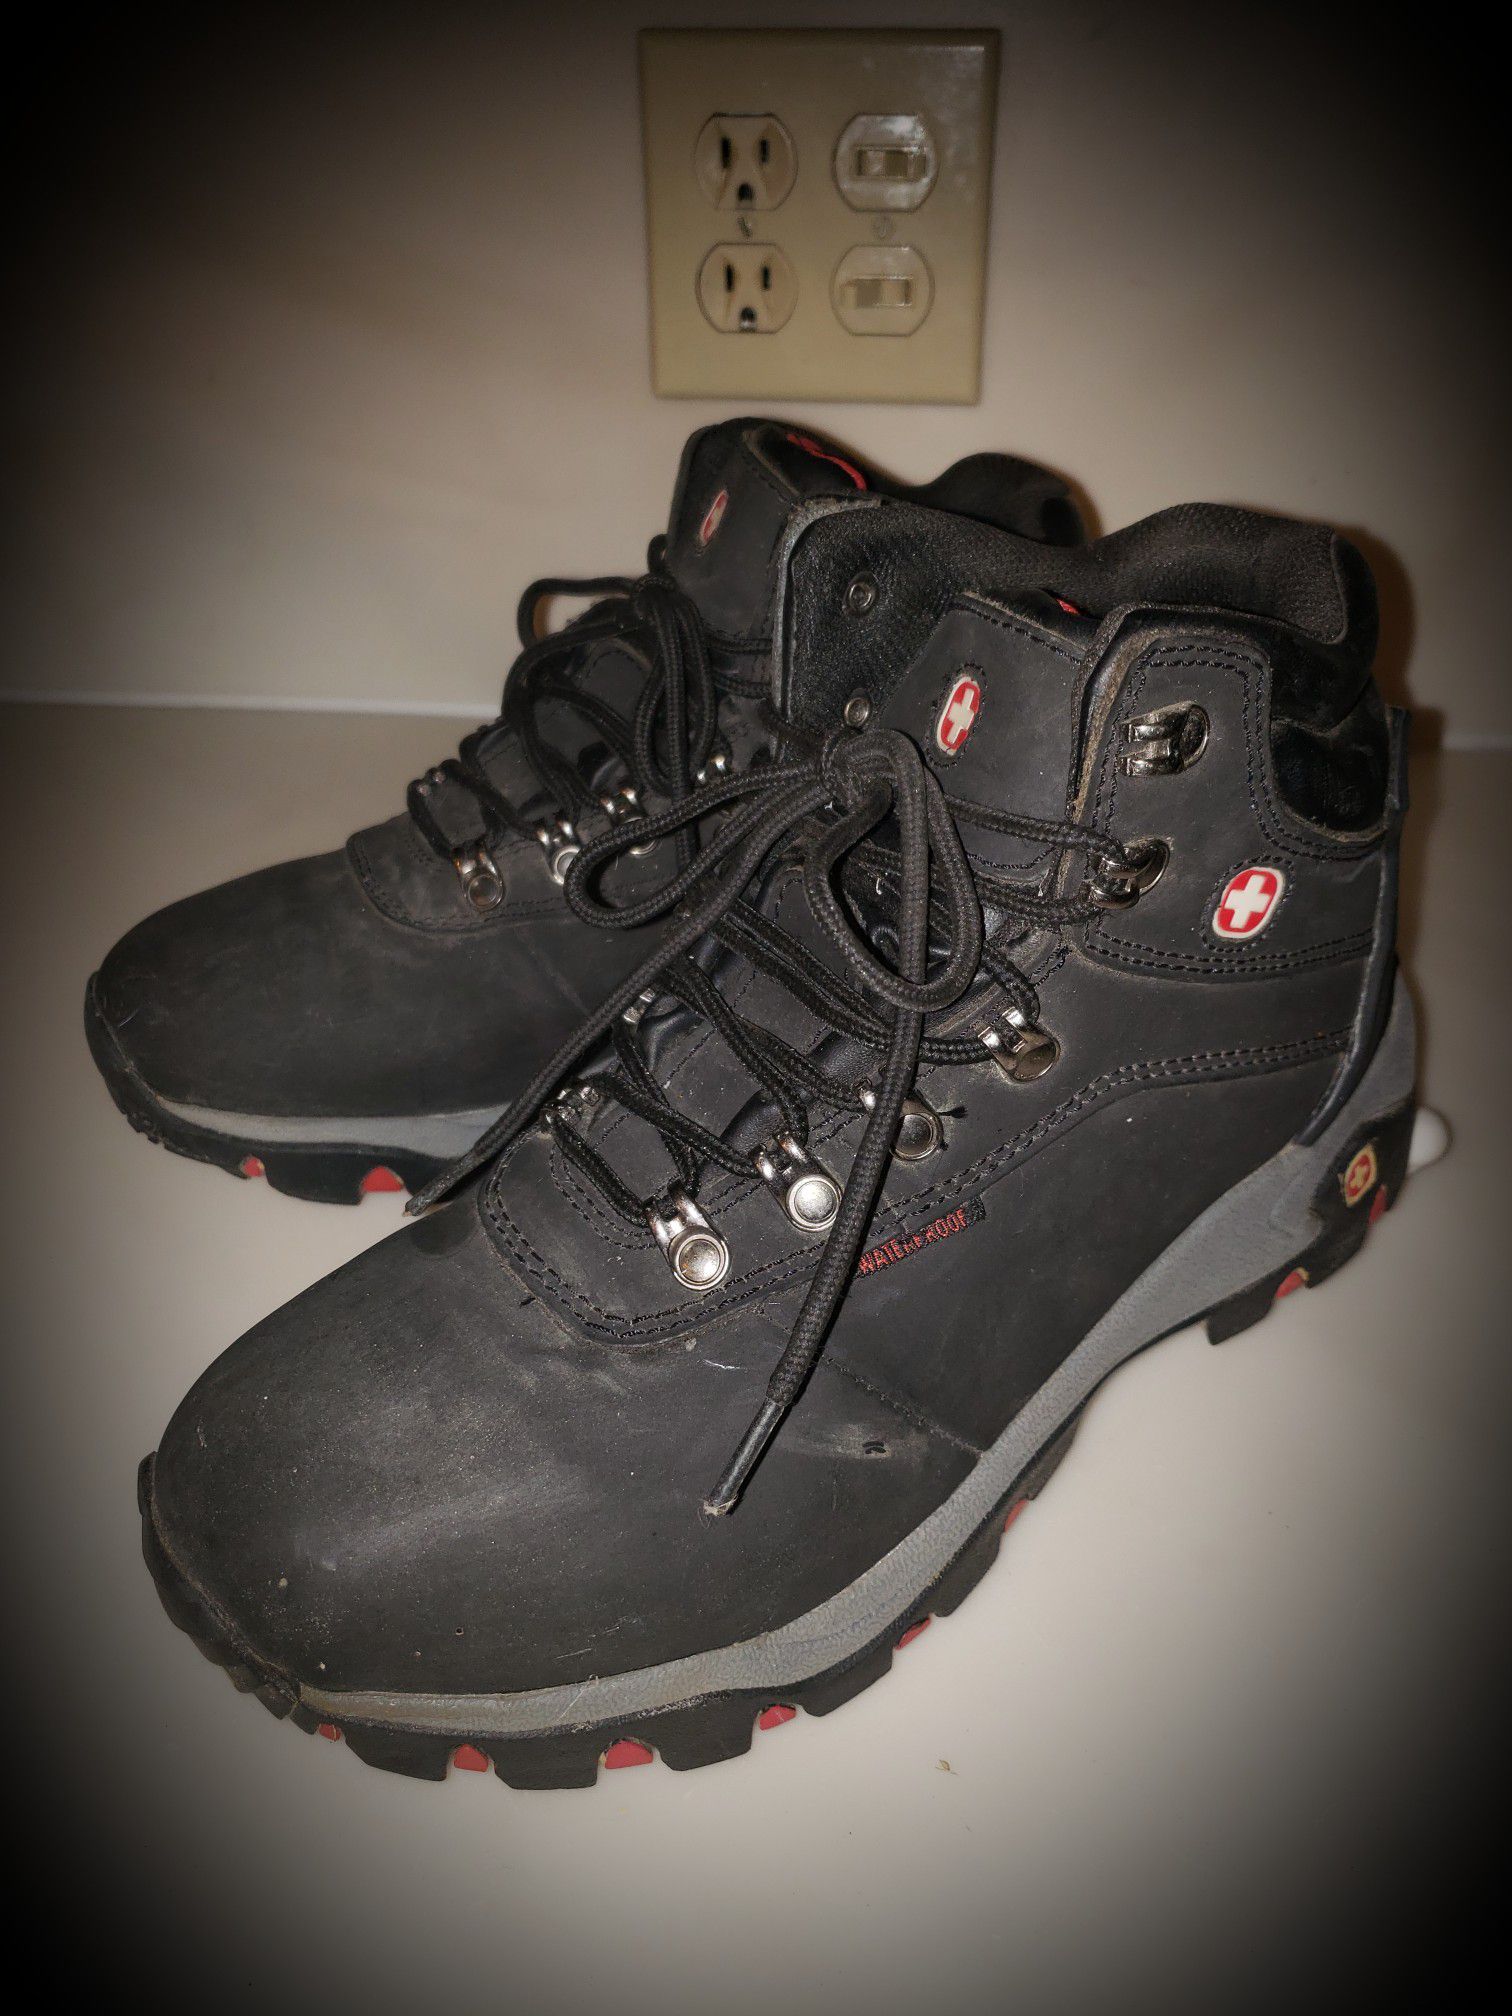 Swiss Army Gear Unisex Black Hiking Boots Steel Toe Men's Sz 7 Women's sz 9  for Sale in Cincinnati, OH - OfferUp